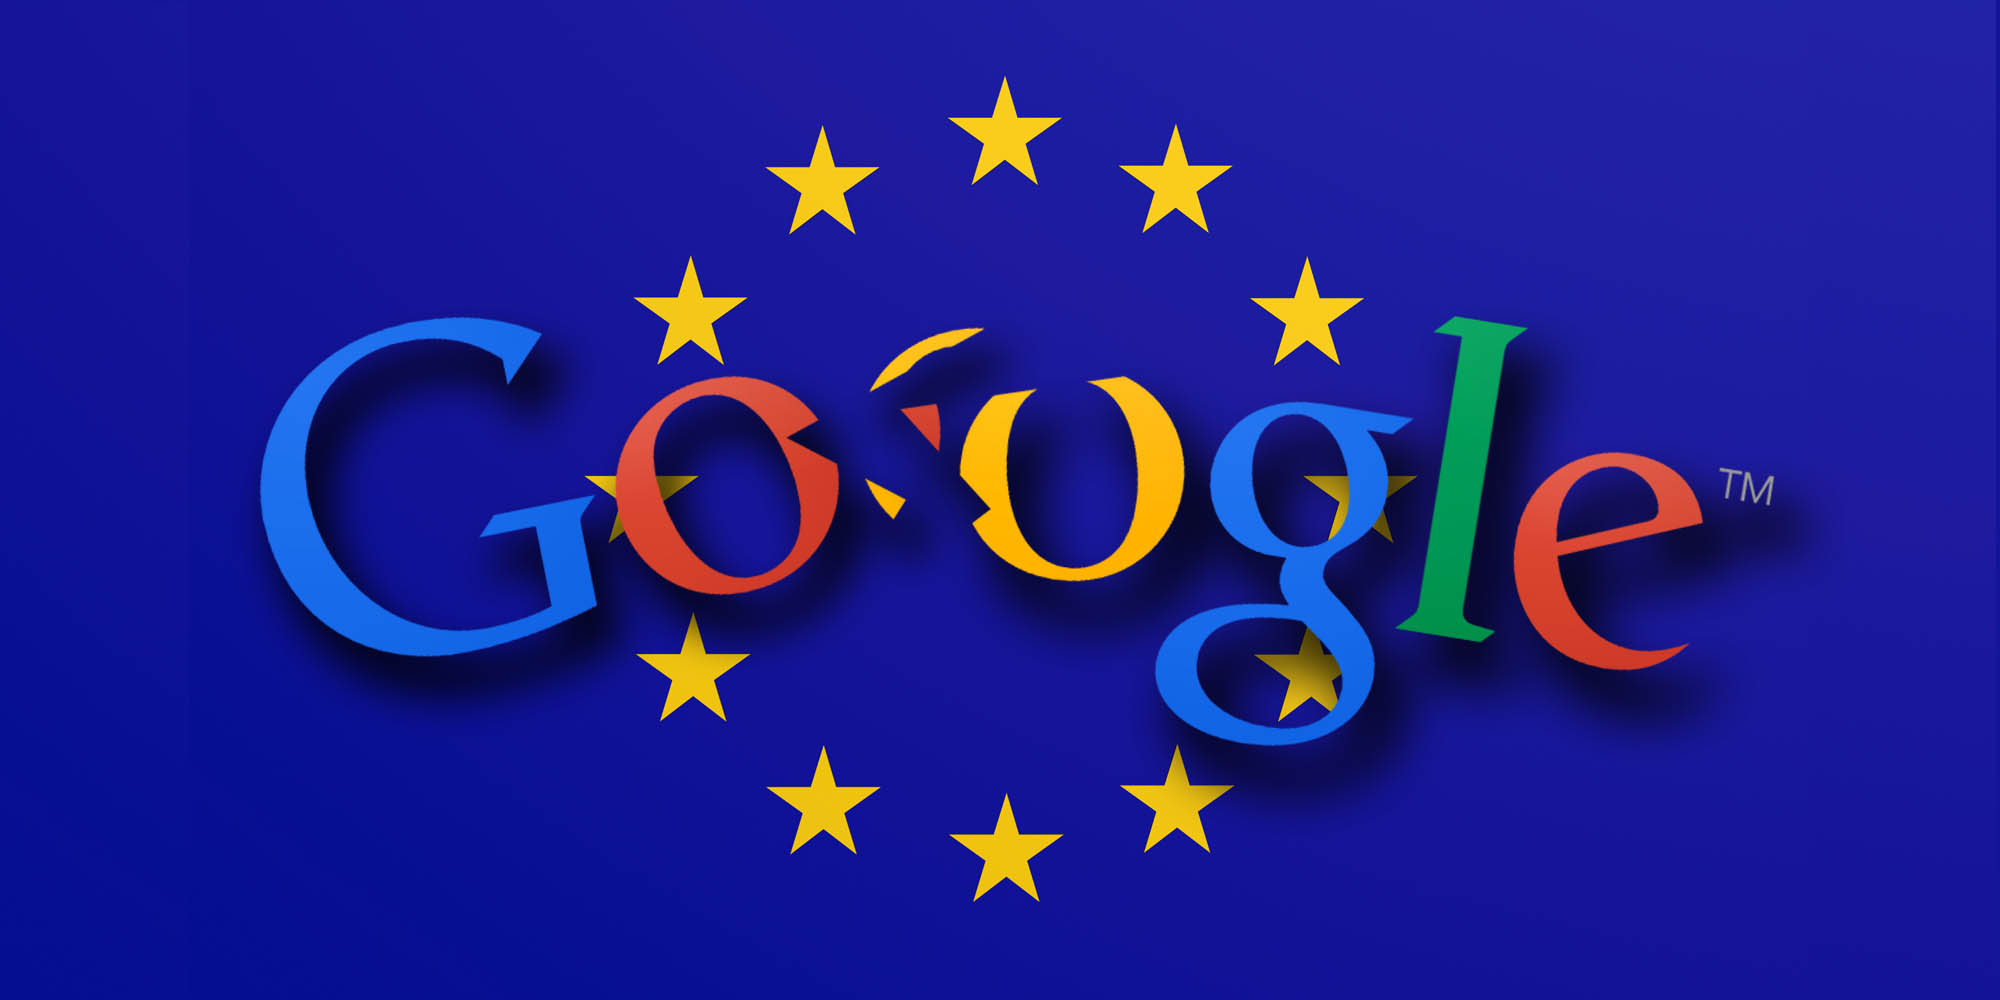 Google: новый закон о цифровых услугах в ЕС затормозит рост экономики